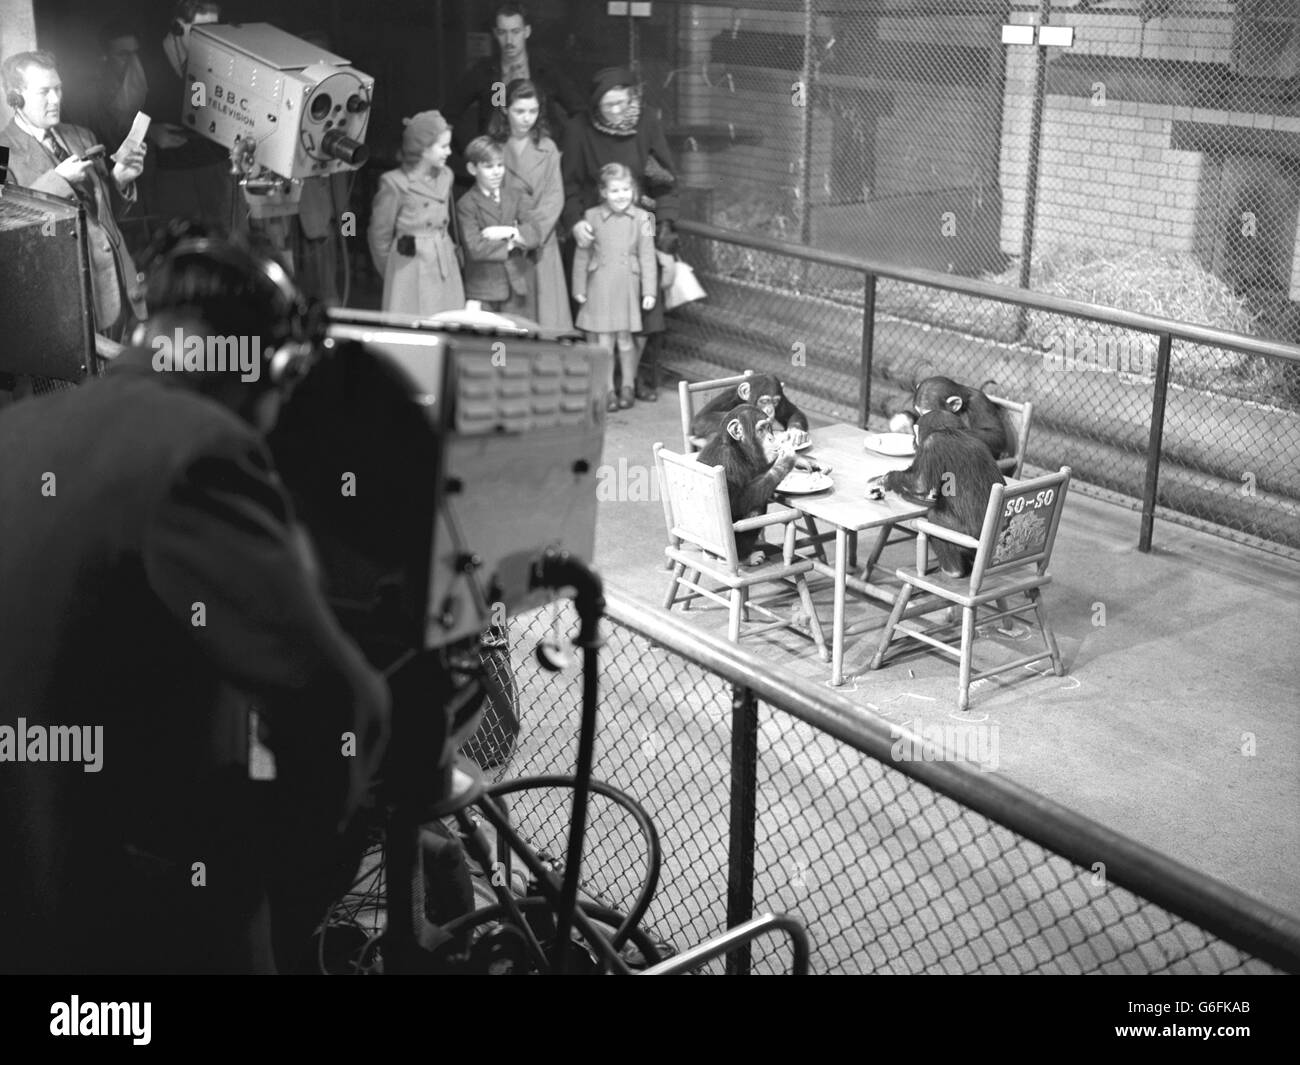 La popular atracción de verano del Zoo de Londres, la fiesta de té de los chimpancés, tuvo su mayor audiencia del día cuando los modales de mesa de so-so, Susan, Sally y Compo fueron televisados por la BBC. Foto de stock